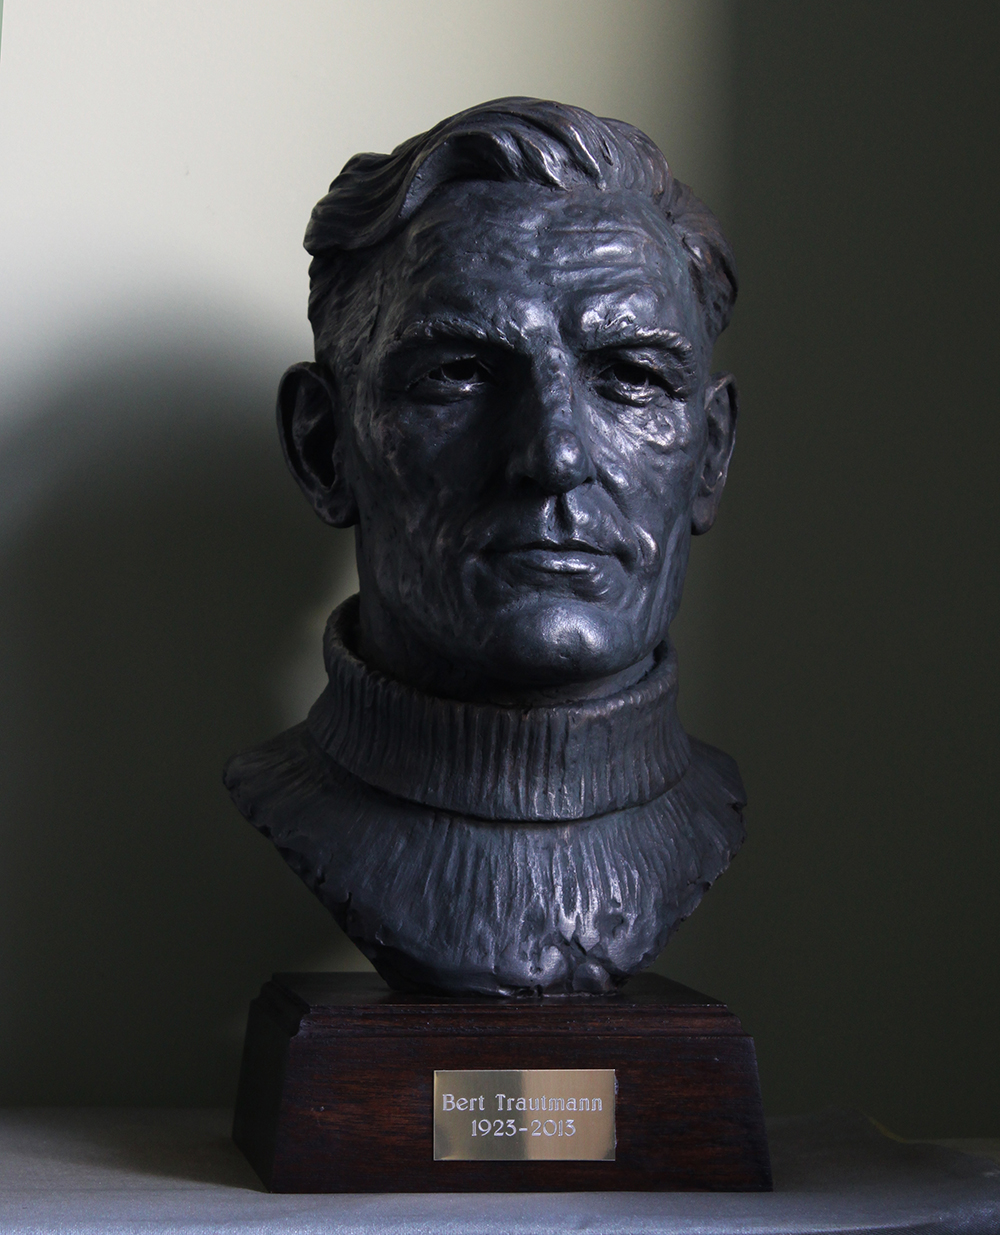 Bust Sculpture of Bert Trautmann